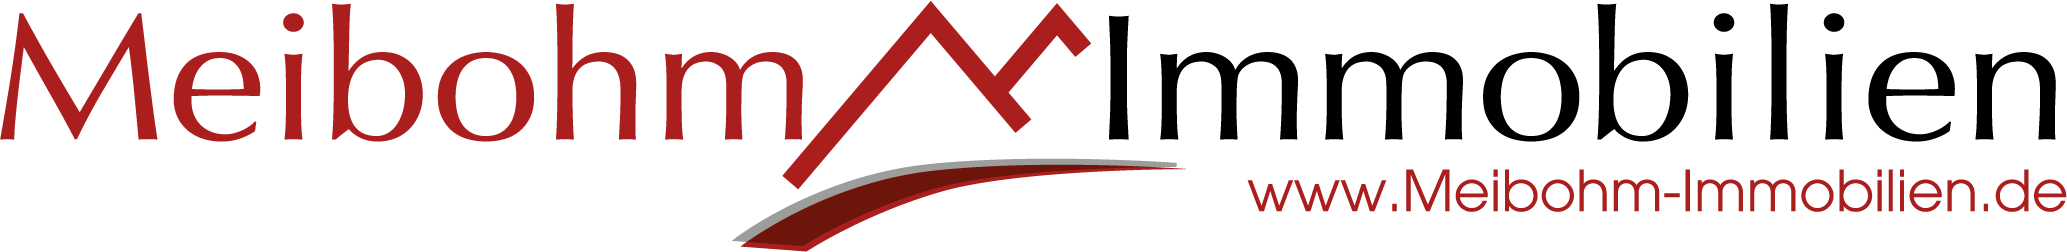 Meibohm Immobilien Logo